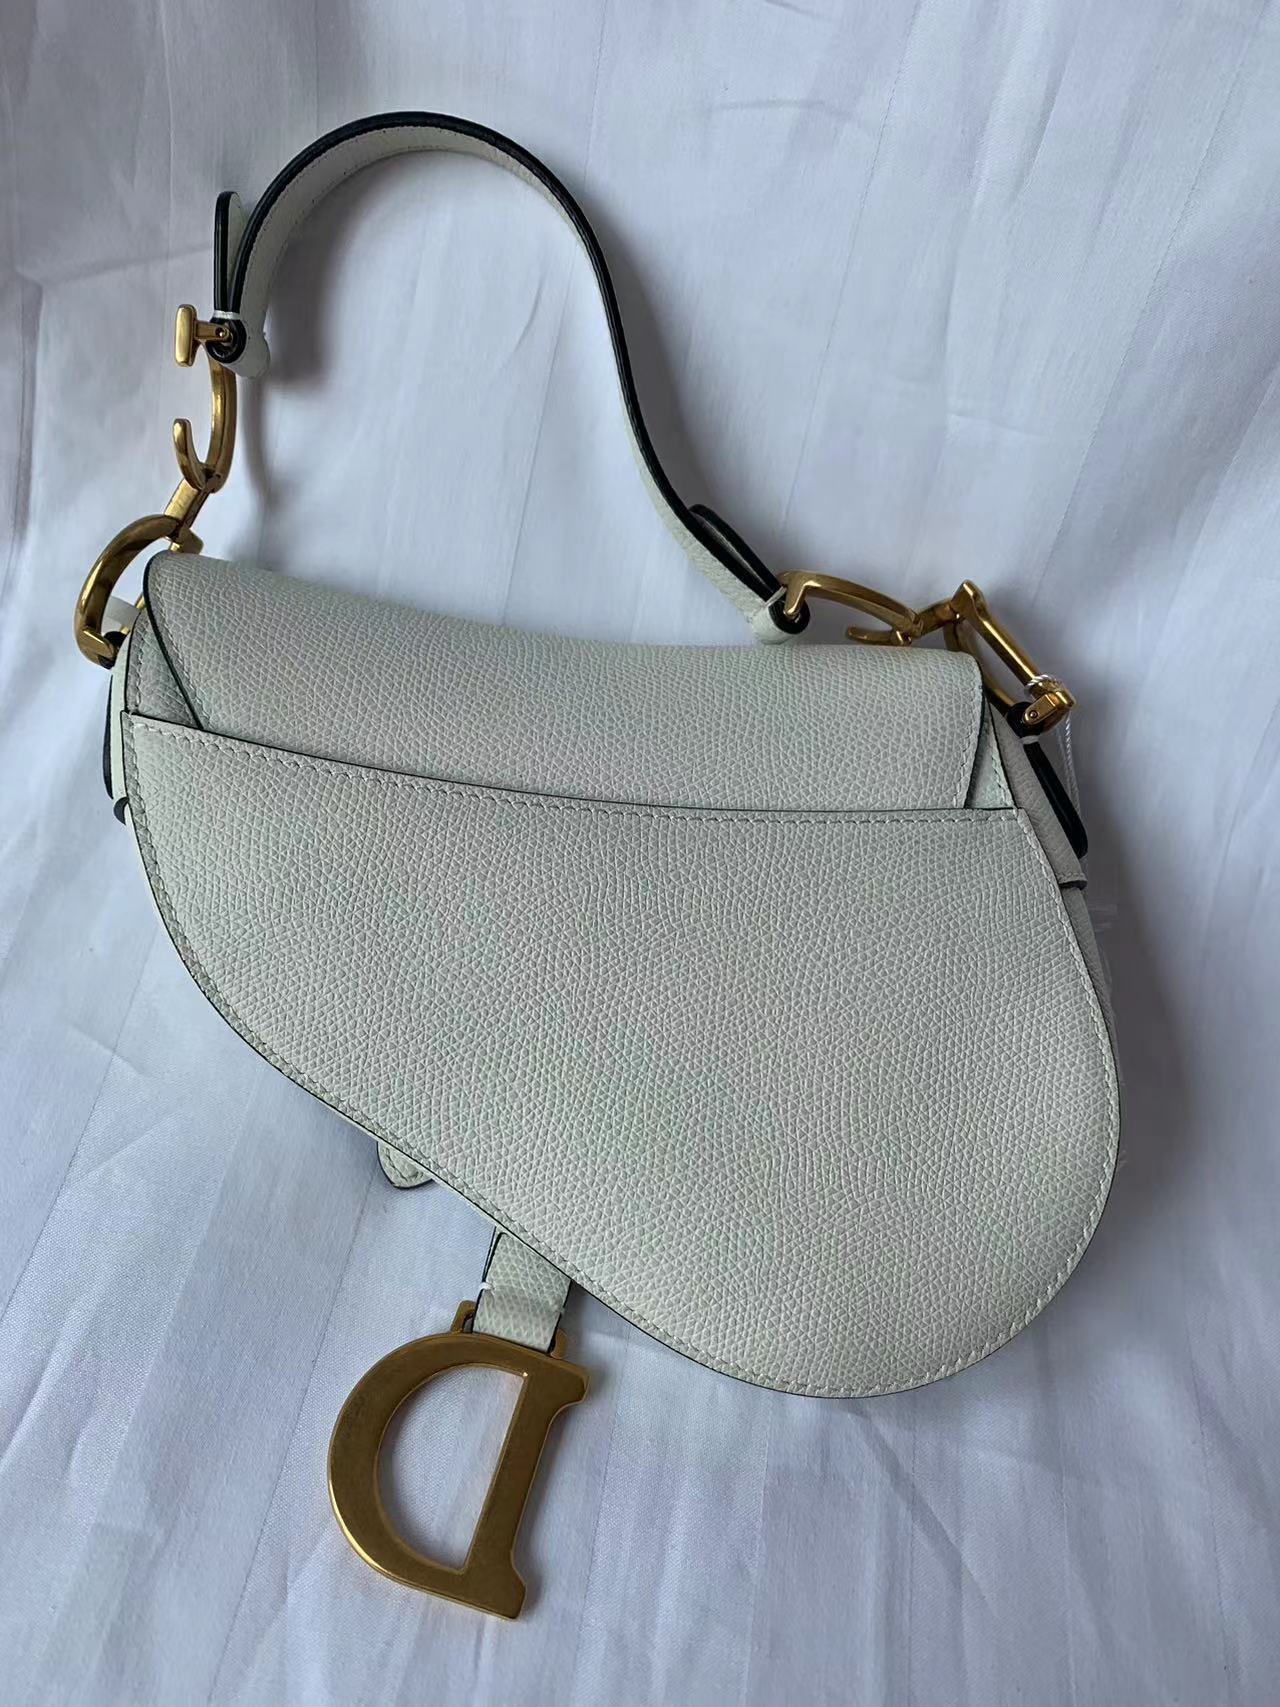 Dior Saddle bag white grain leather mini back